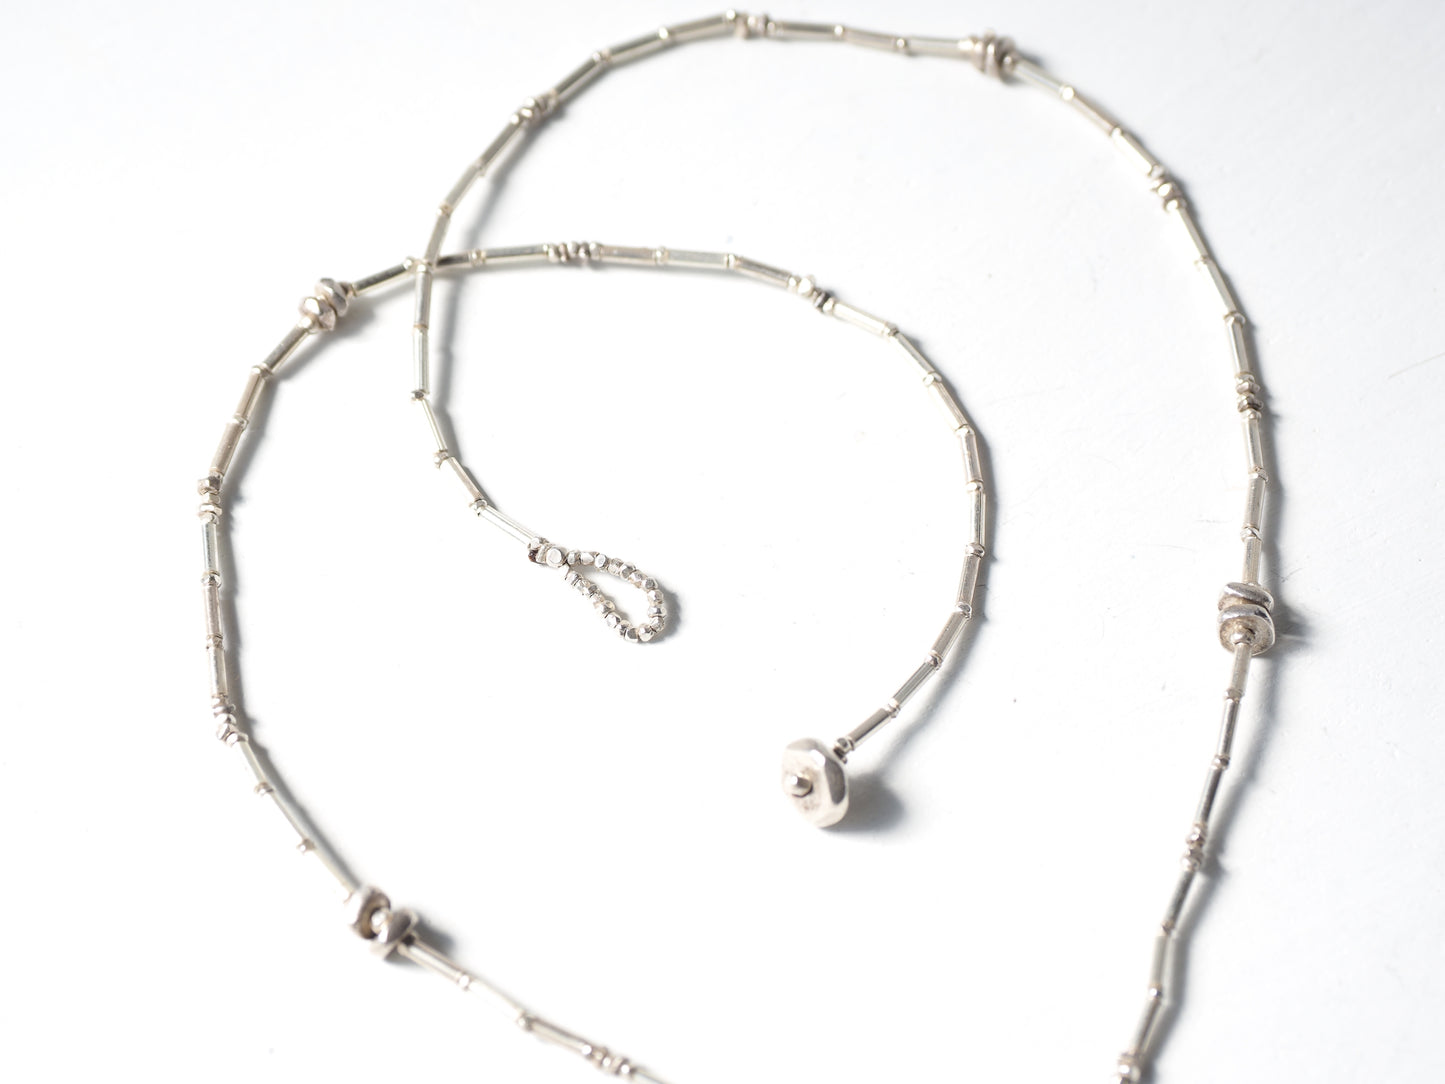 Mini-charm silver necklace